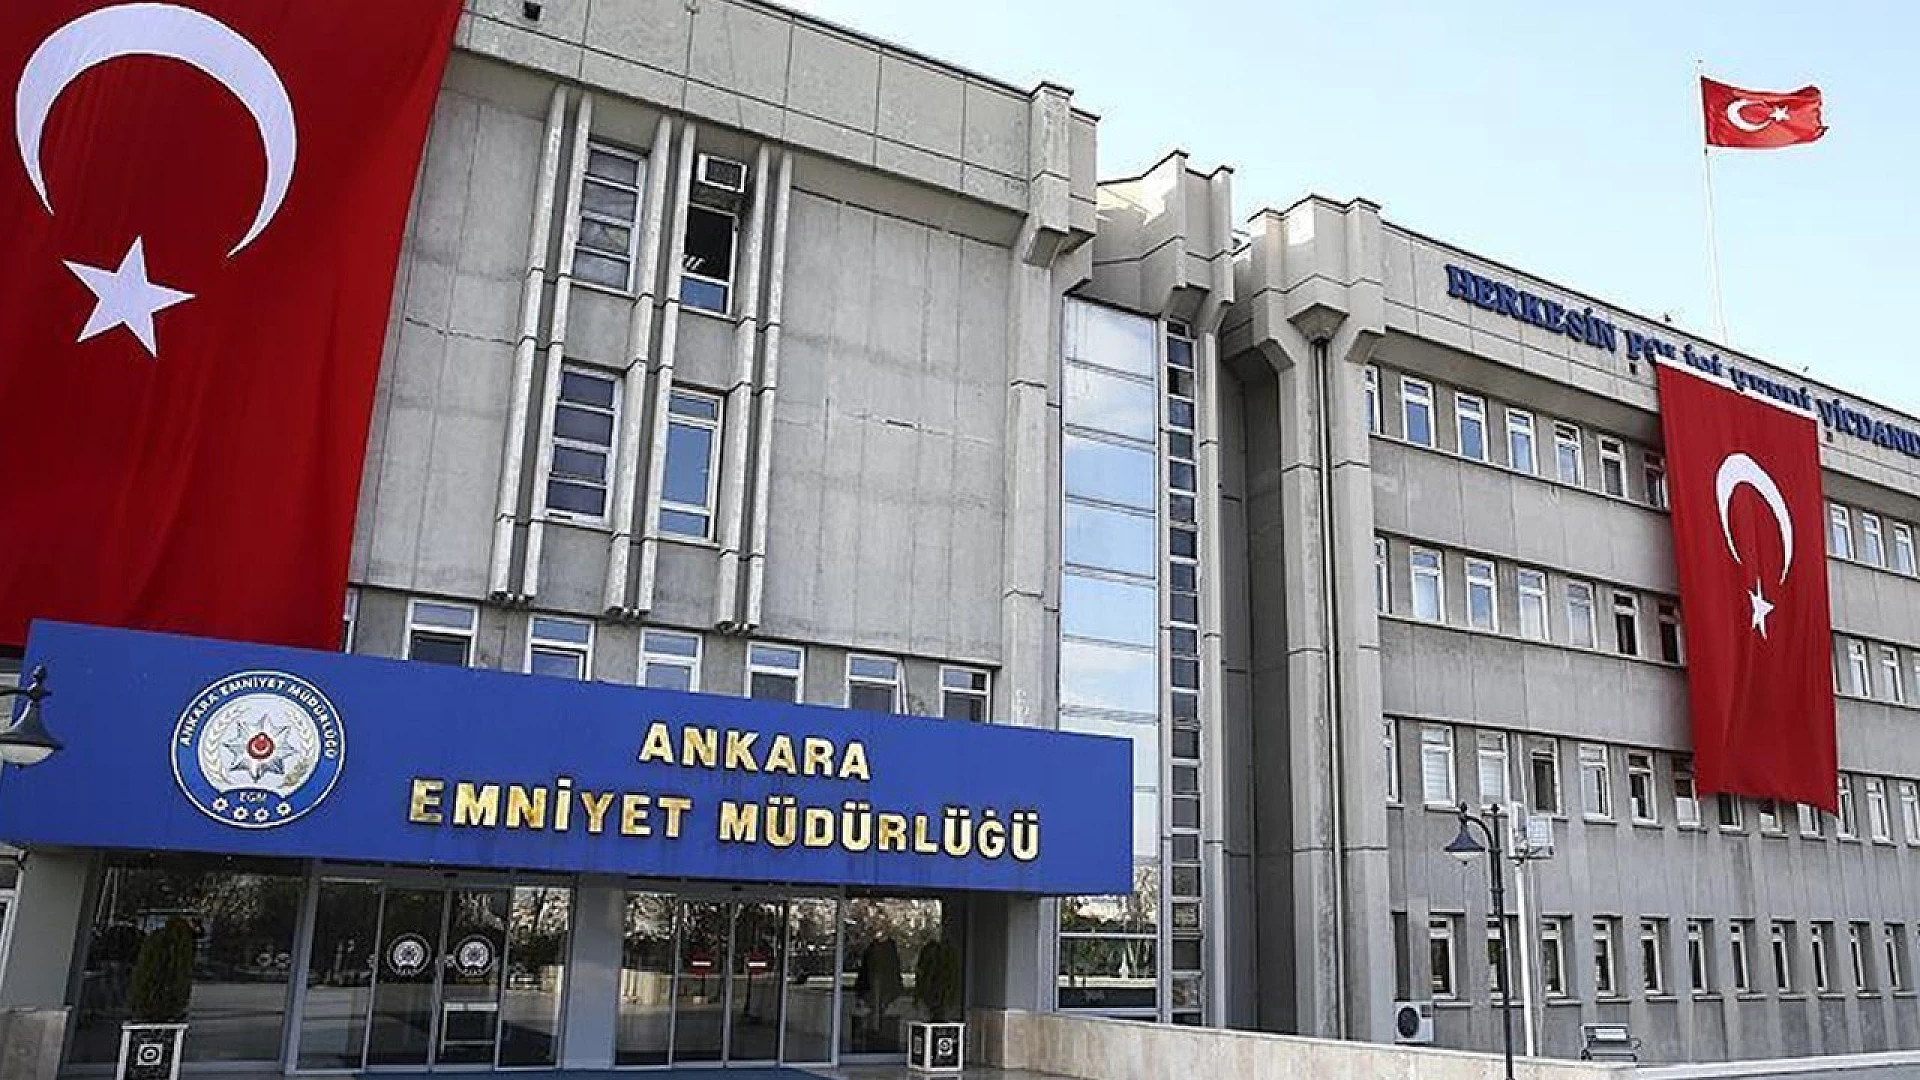 Ankara Kızılay'da şüpheli paket patlatılacak